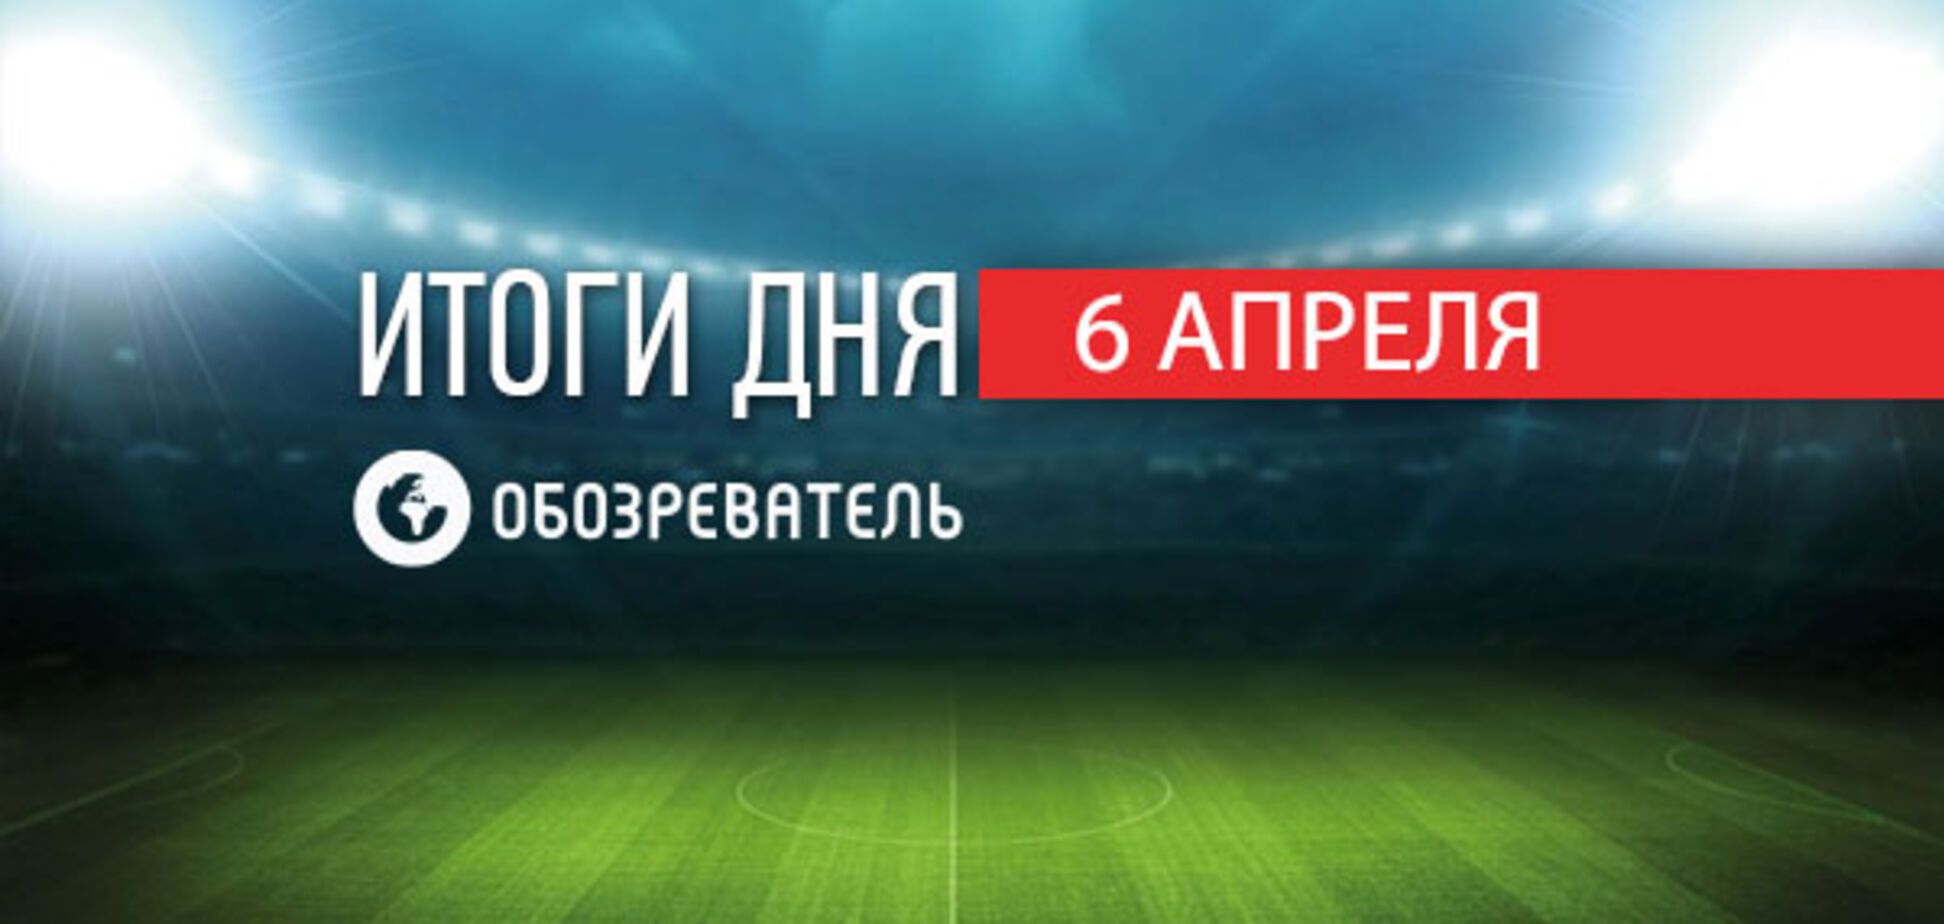 Украинский футболист 'Шахтера' меняет гражданство: спортивные итоги 6 апреля